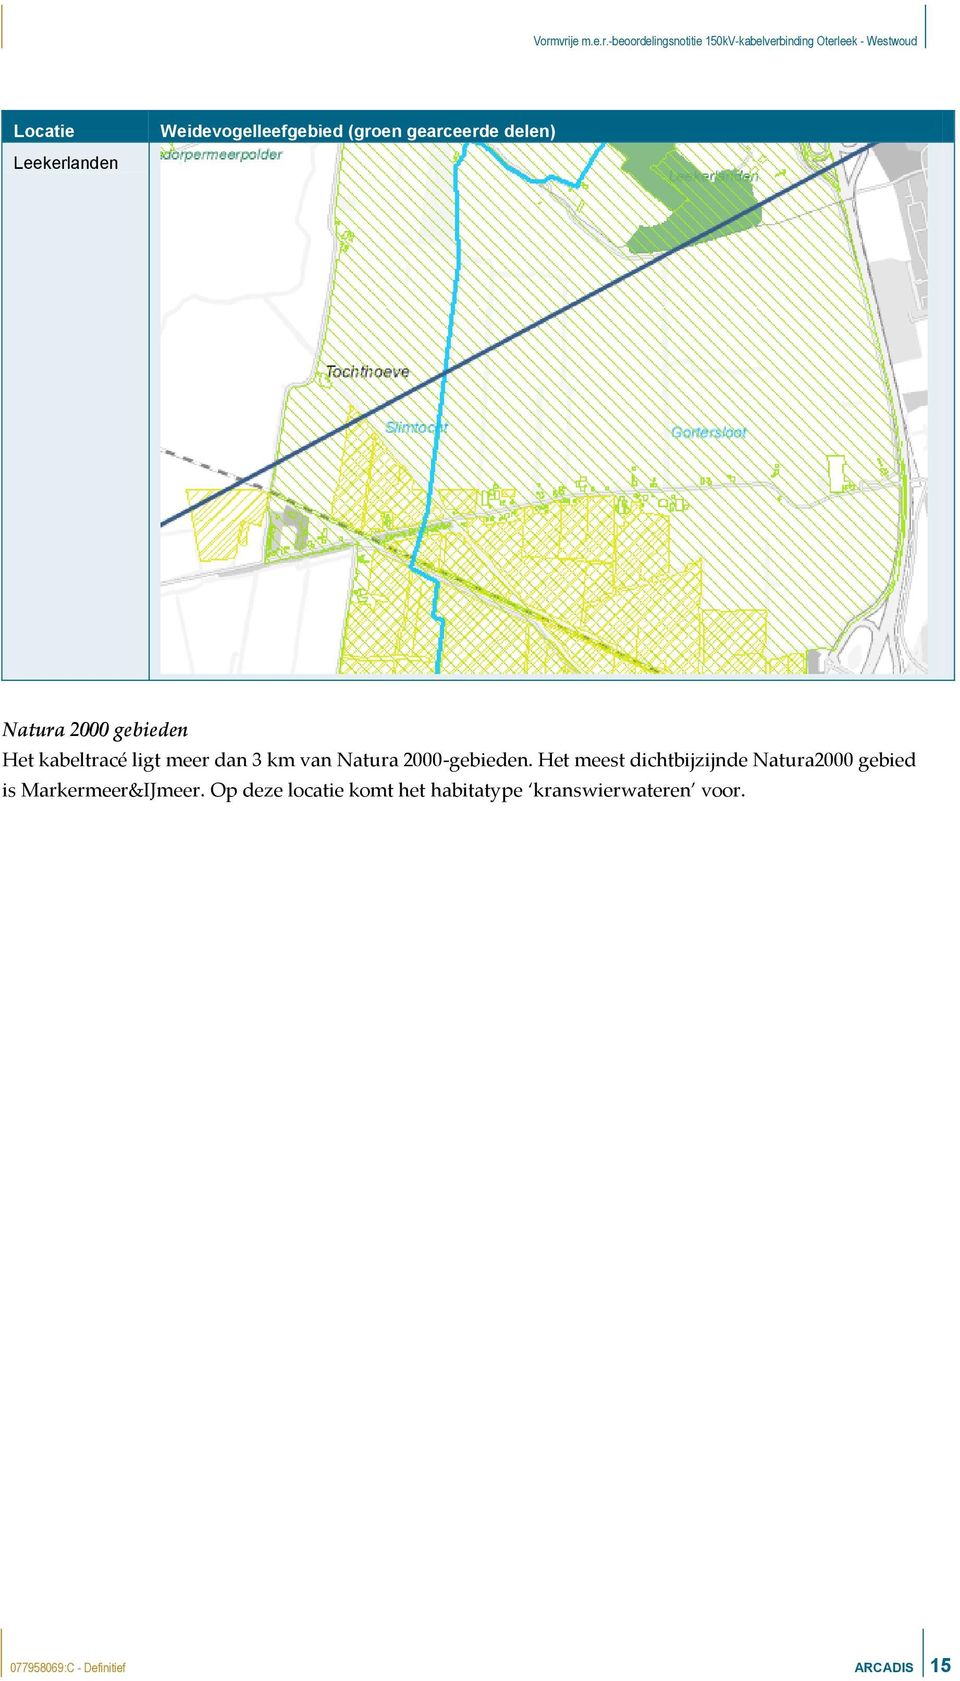 Het meest dichtbijzijnde Natura2000 gebied is Markermeer&IJmeer.